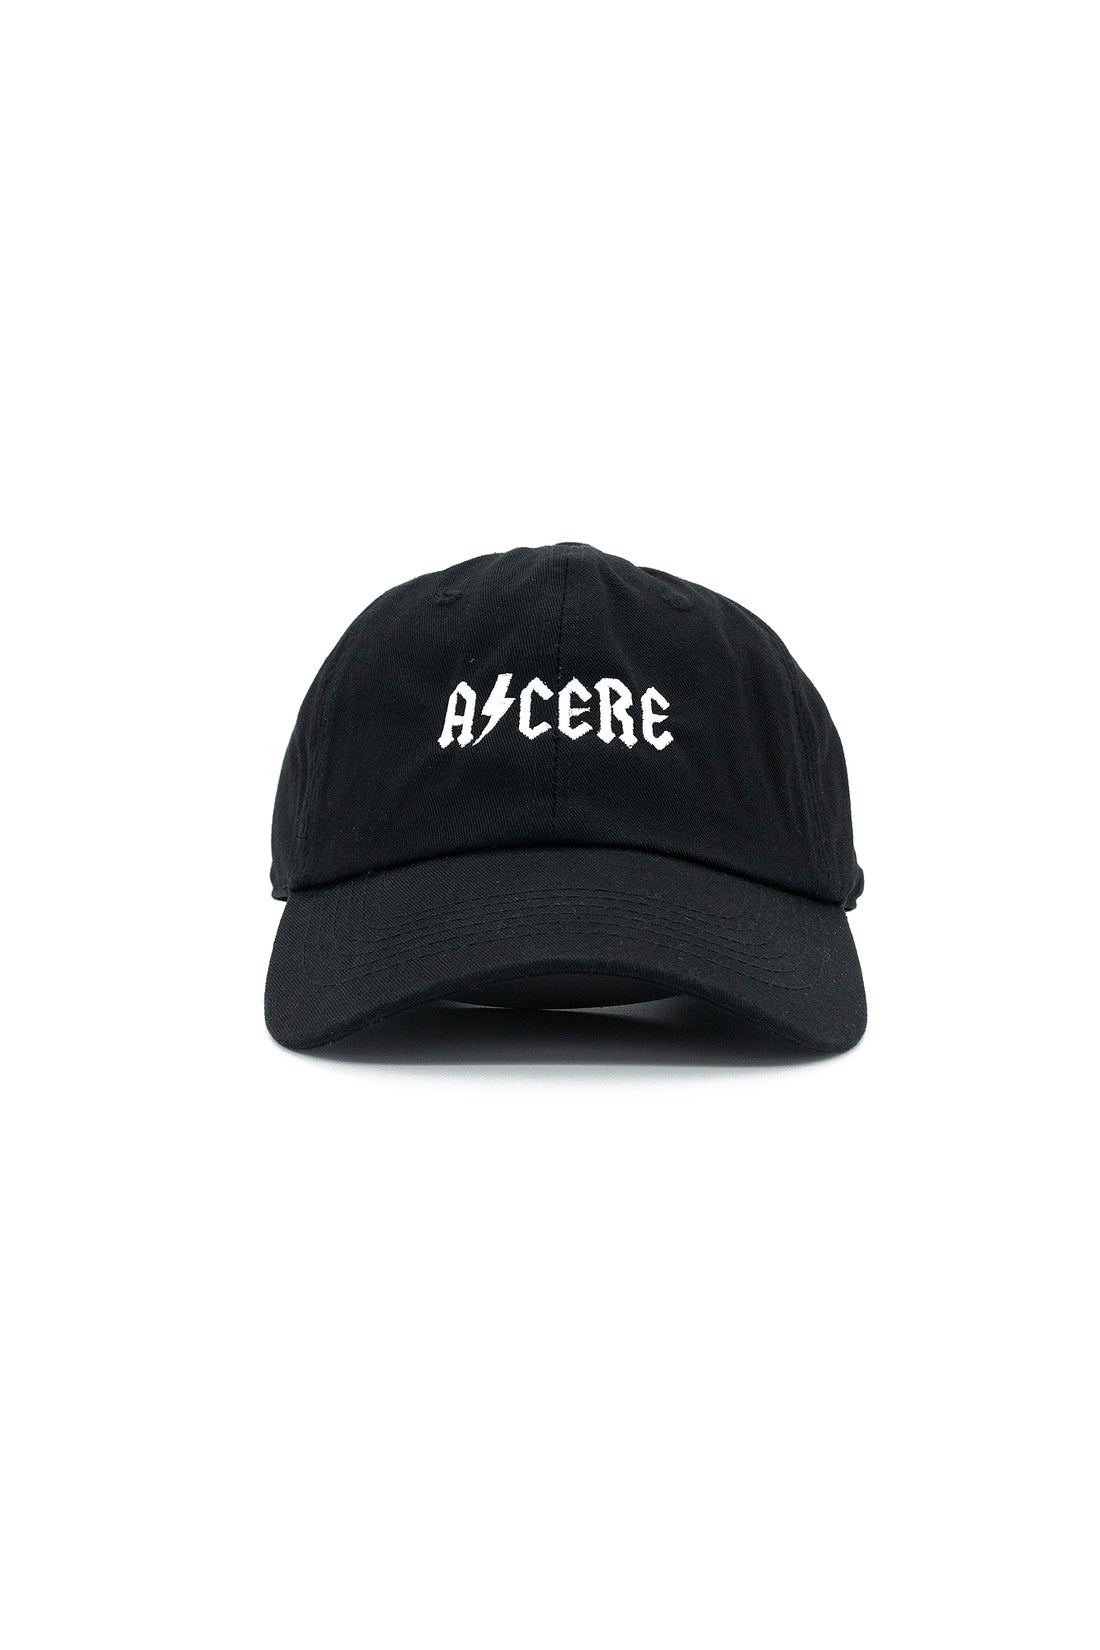 Acere Dad Hat